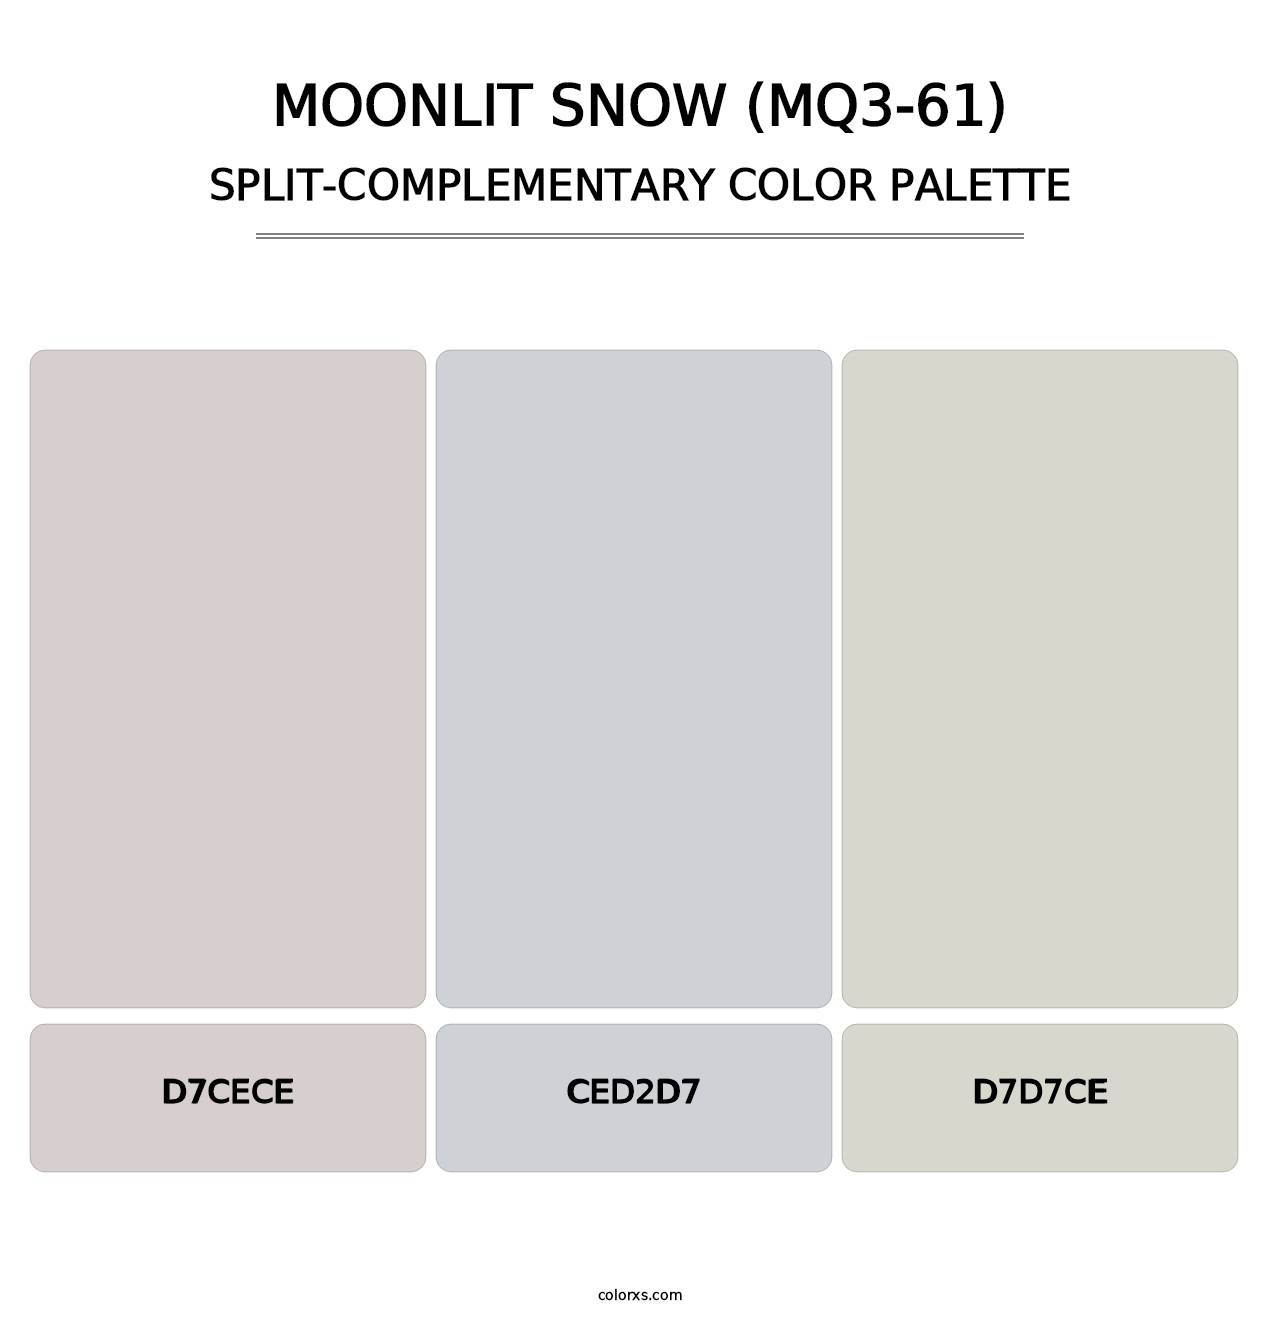 Moonlit Snow (MQ3-61) - Split-Complementary Color Palette